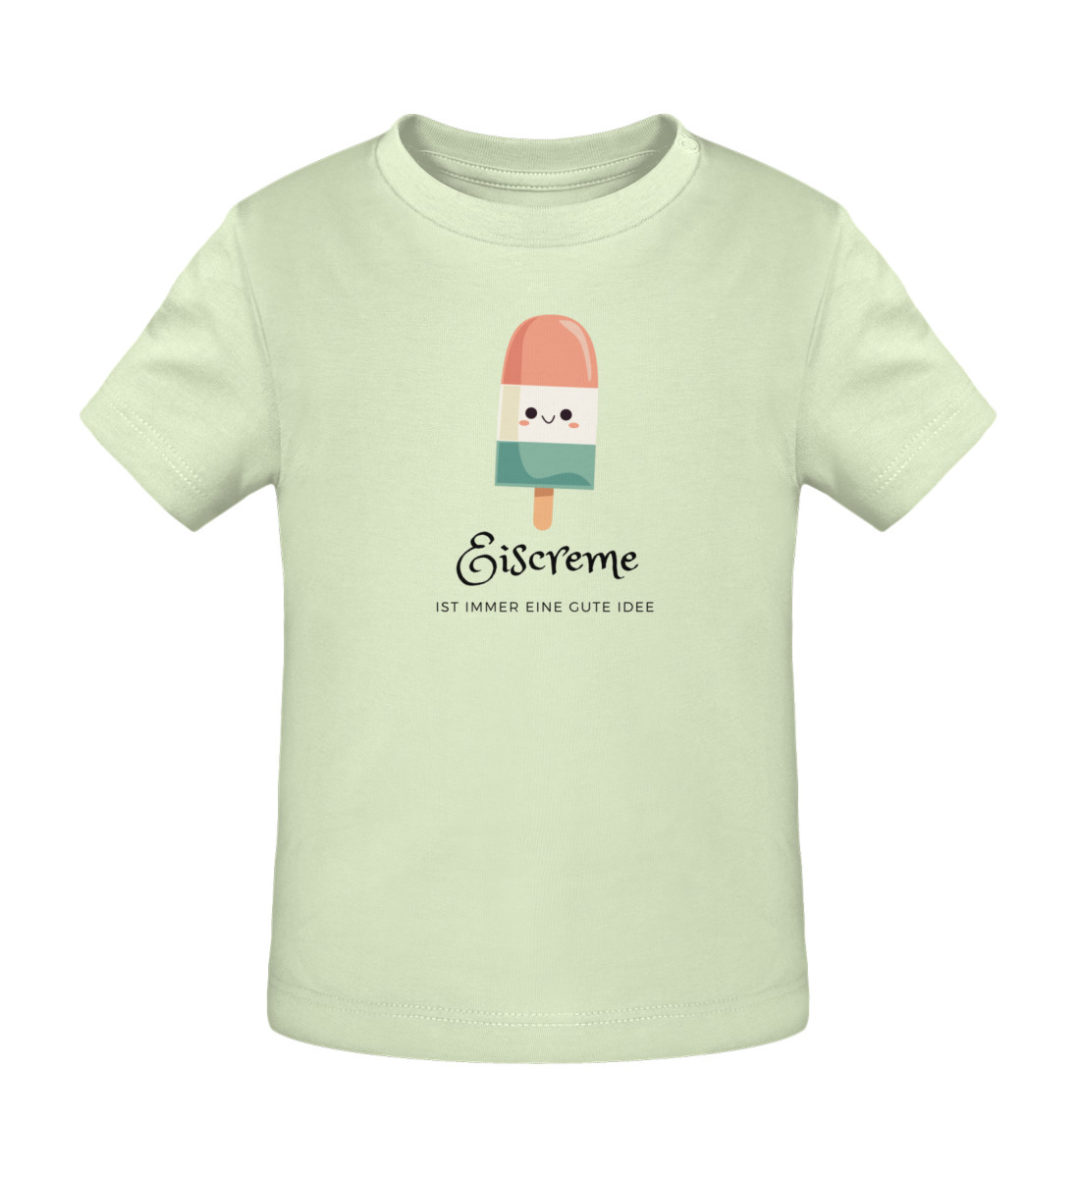 Eiscreme ist immer eine gute Idee - Baby Creator T-Shirt ST/ST-7105